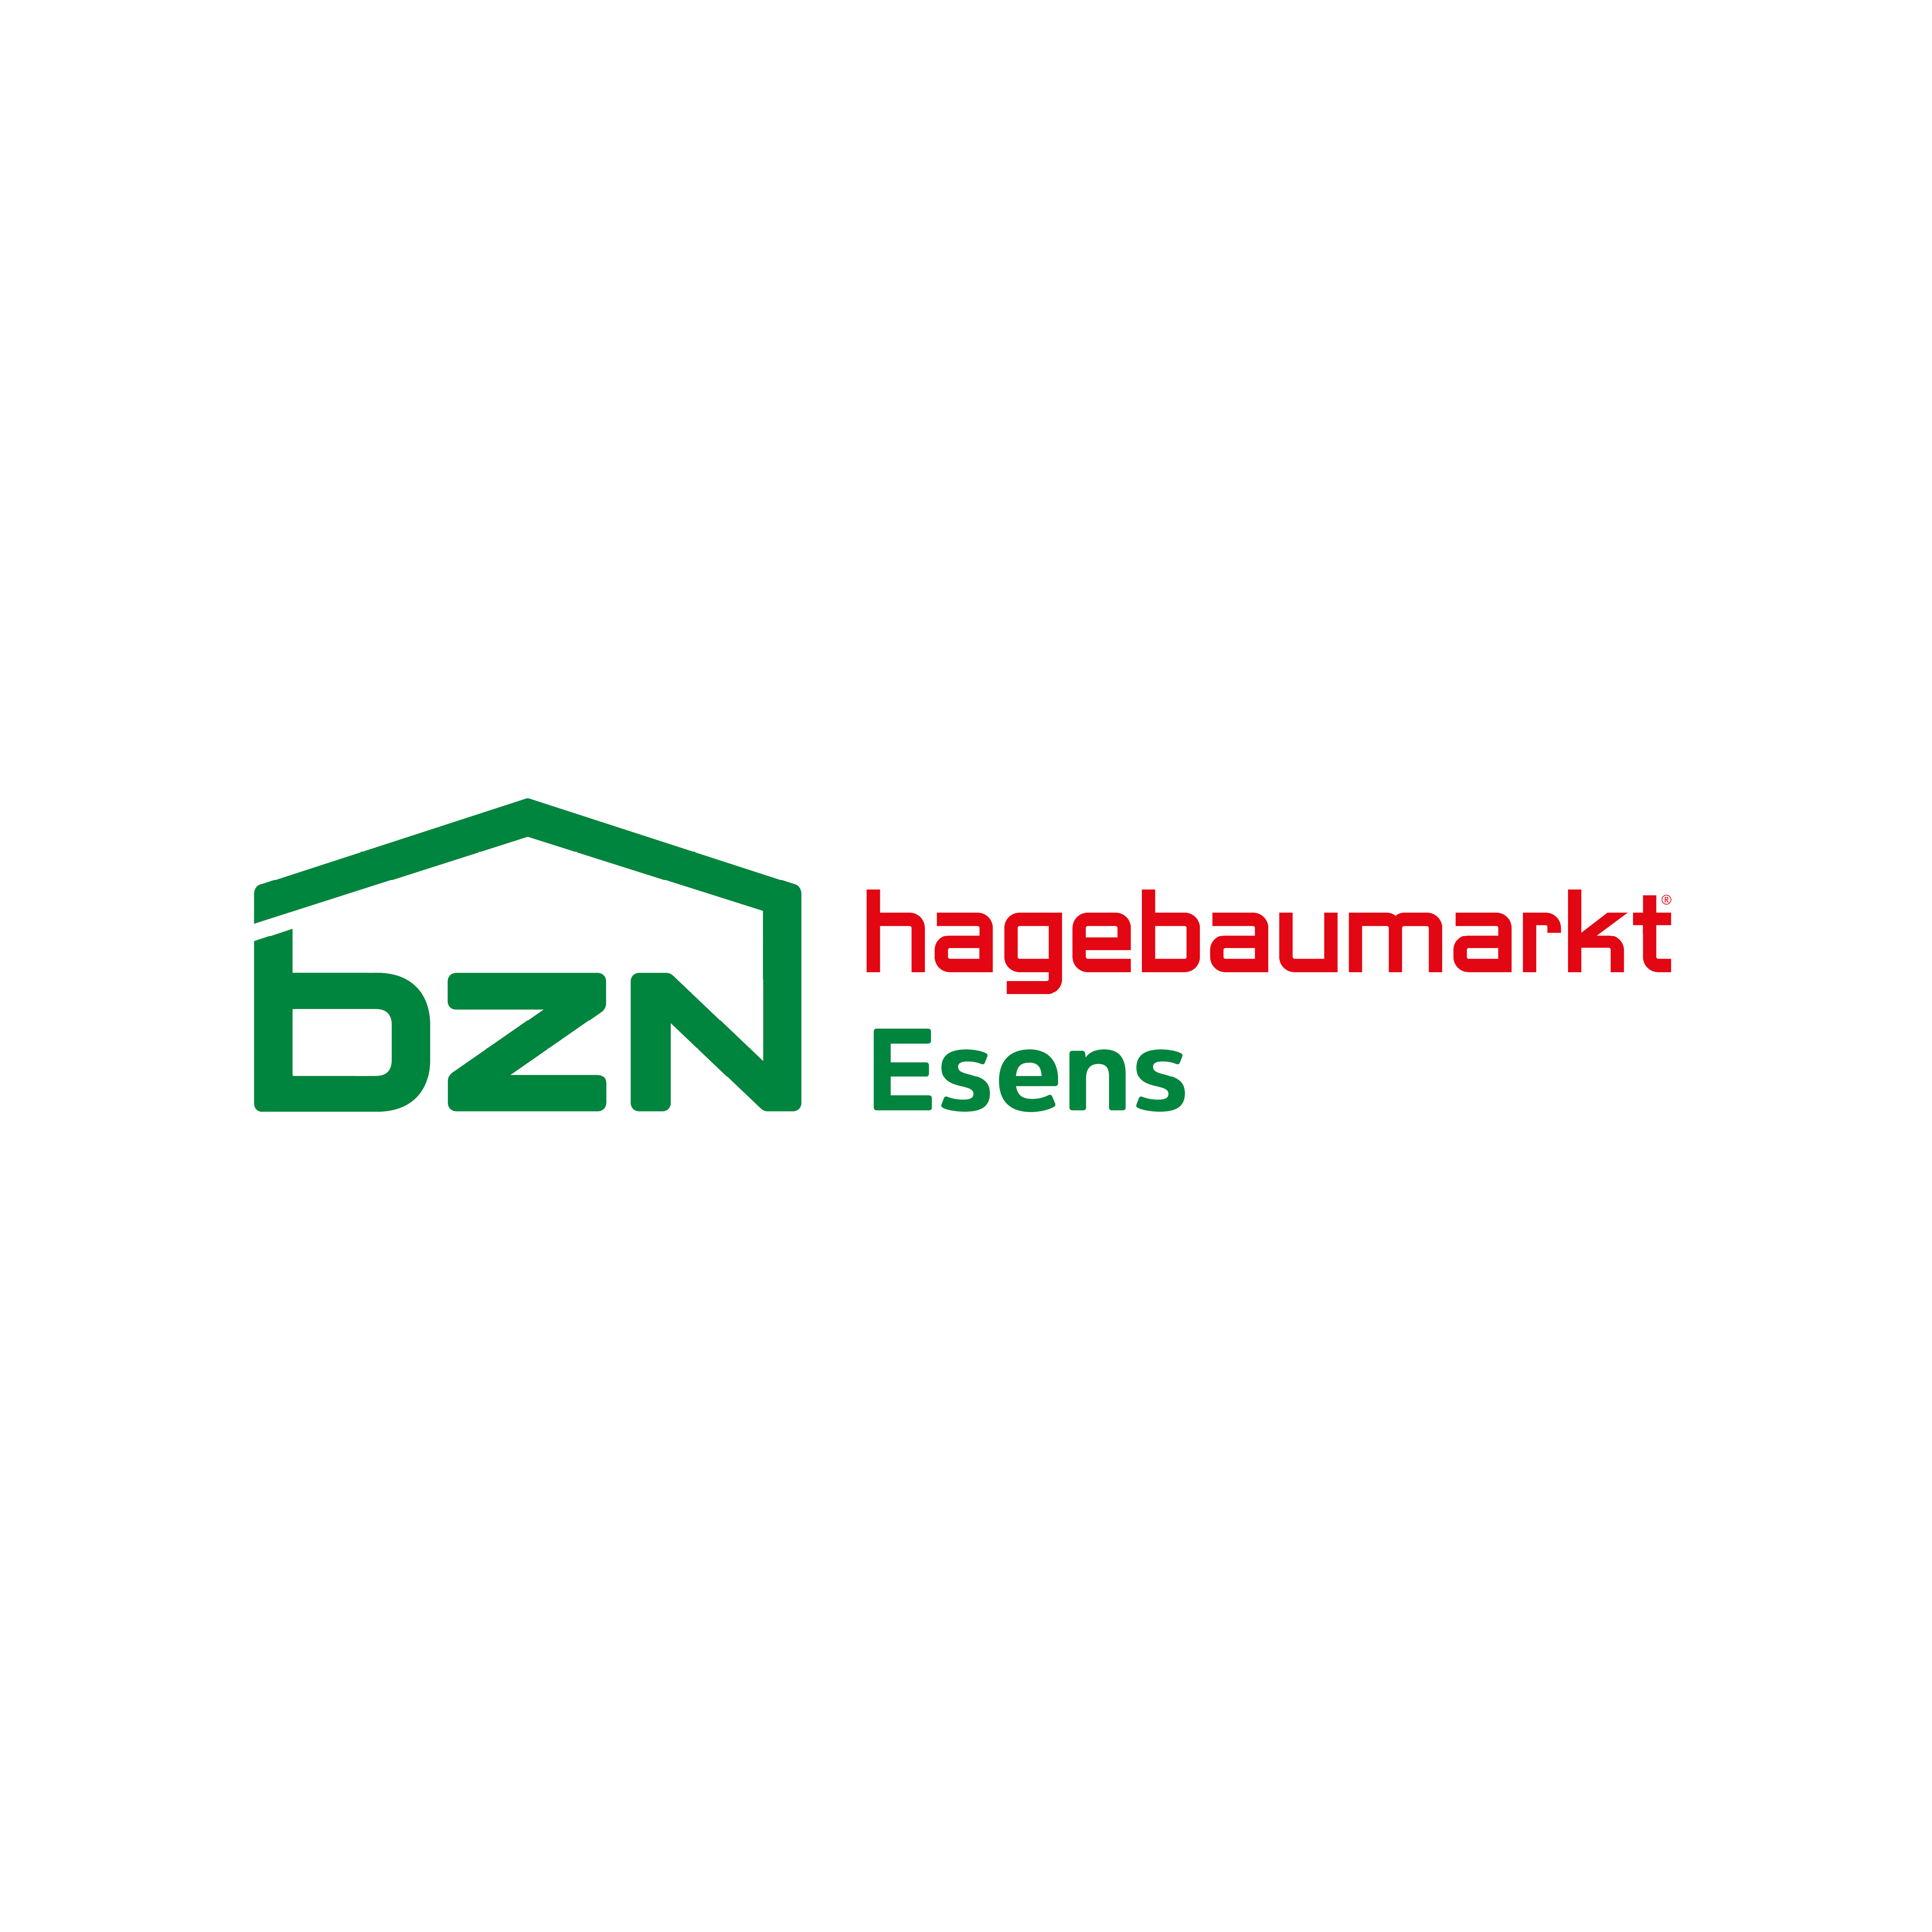 BZN Hagebaumarkt Esens GmbH & Co. KG Logo